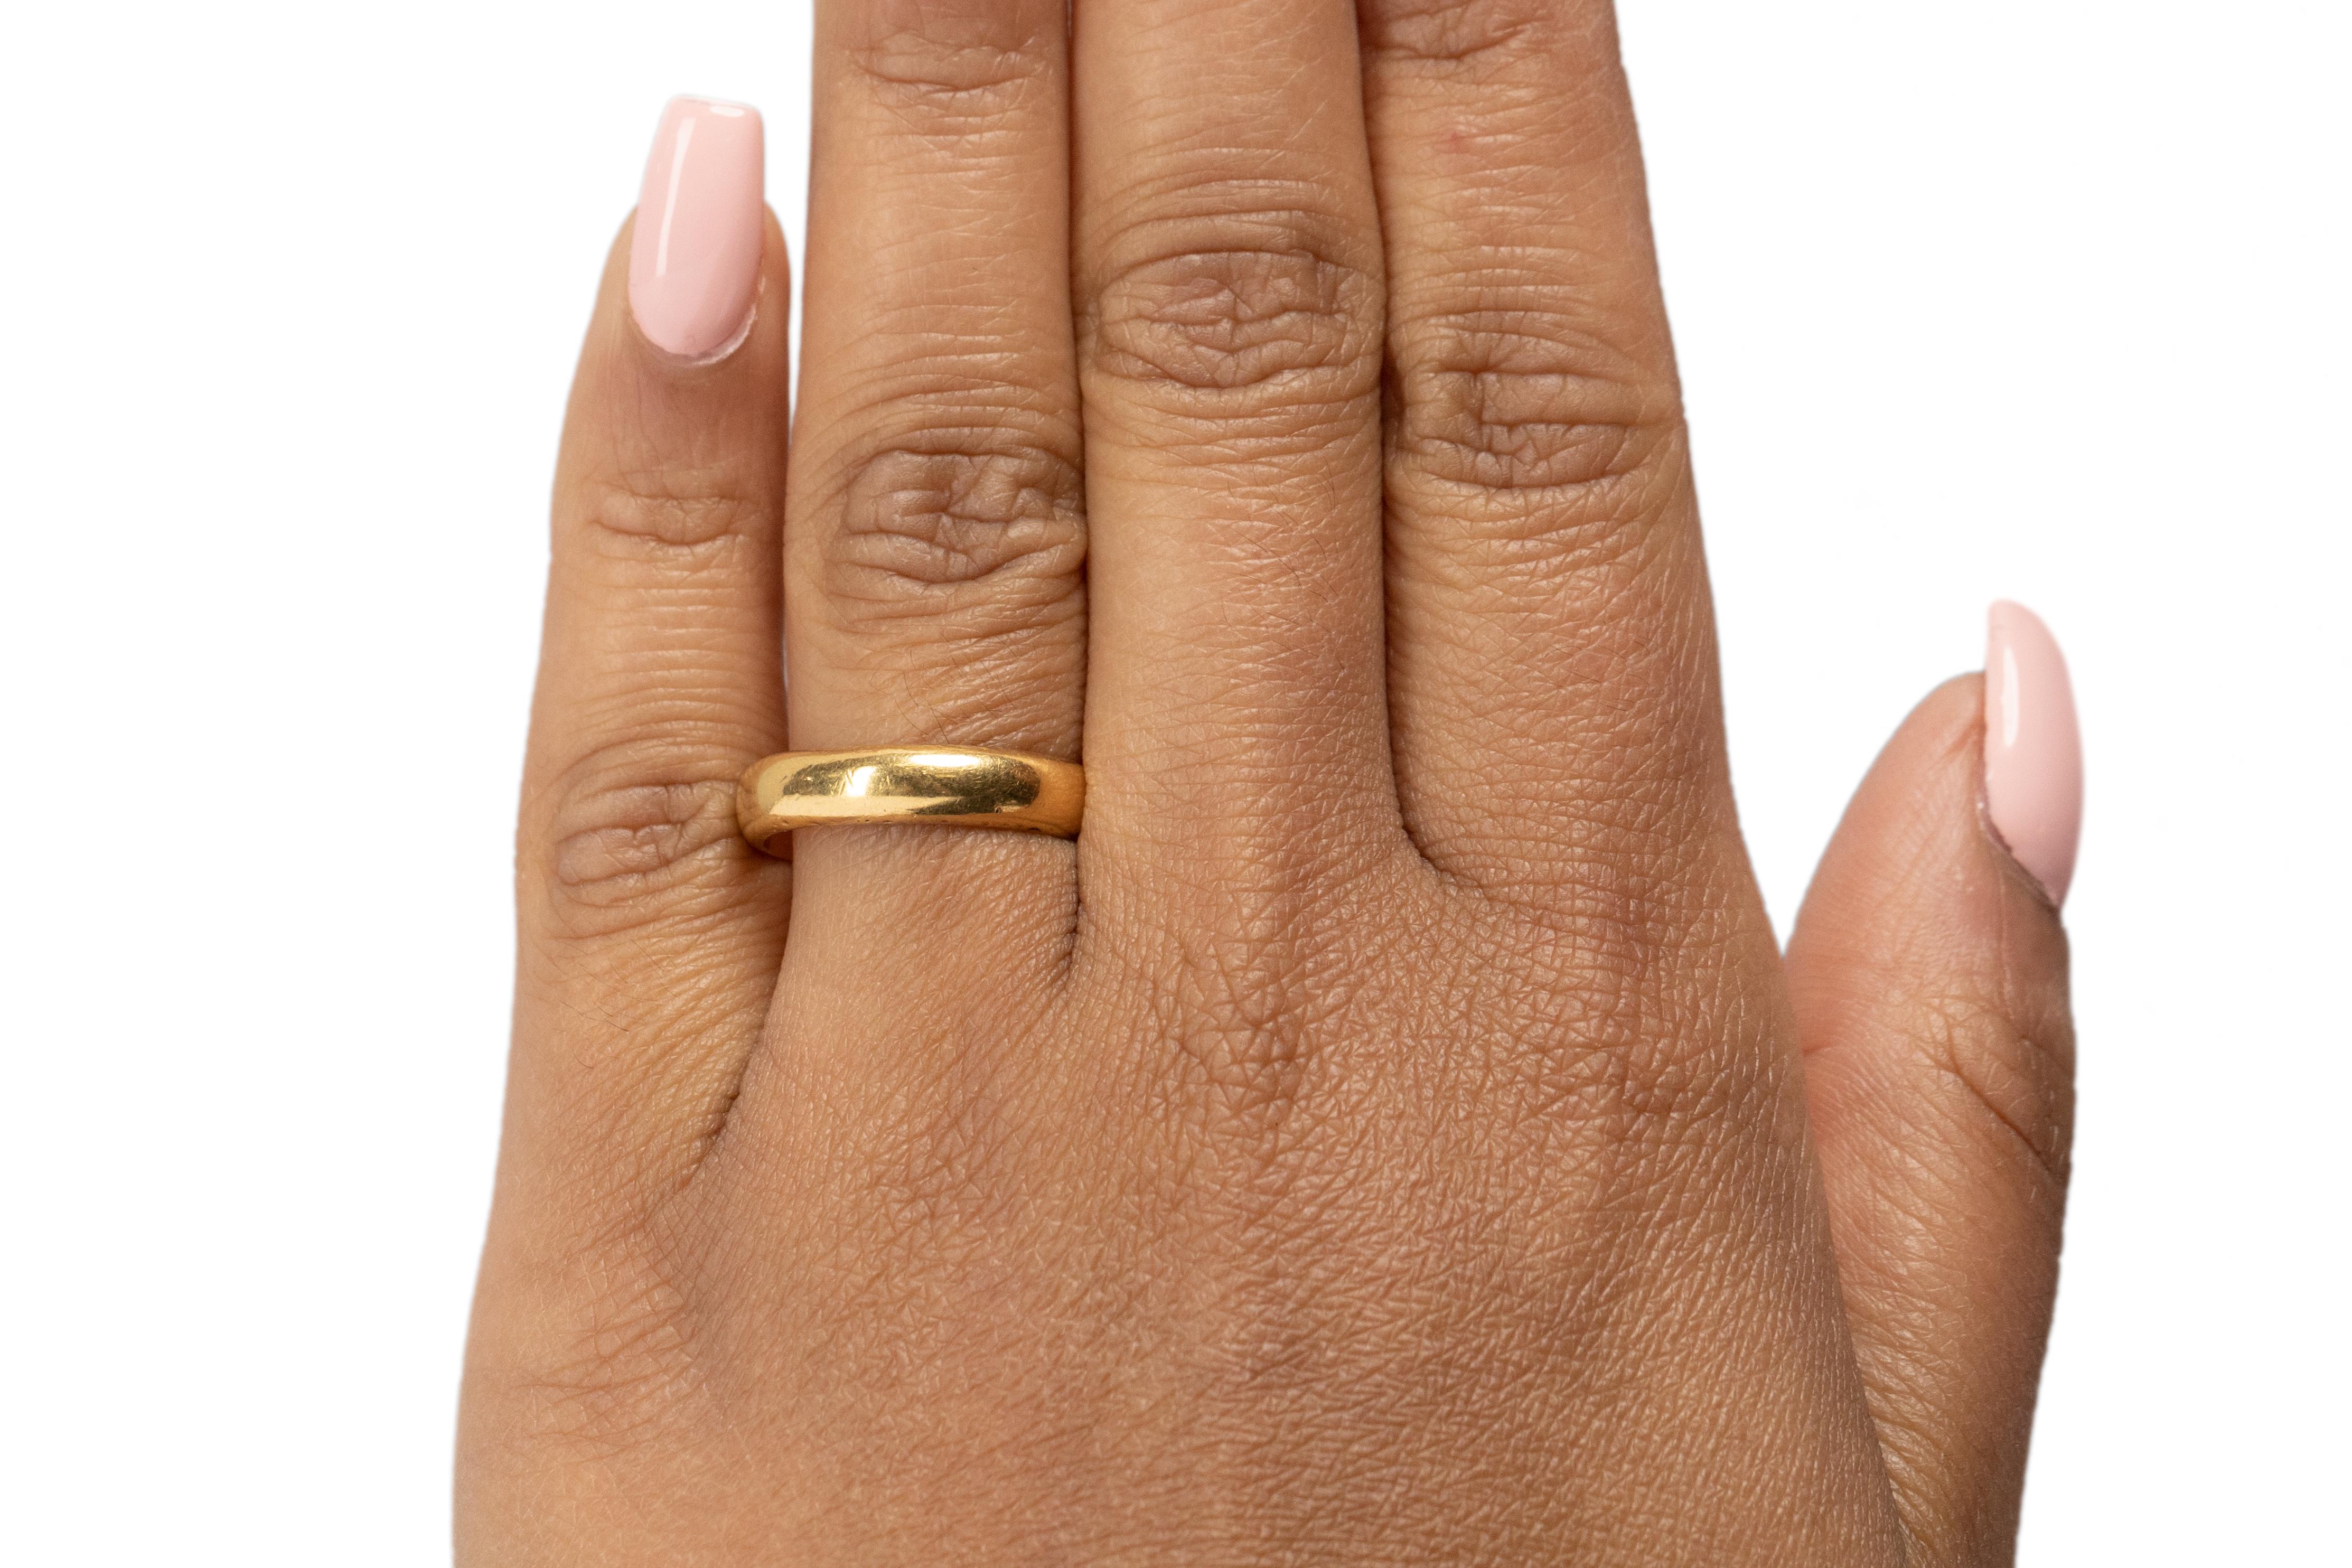 Taille de l'anneau : 7
Type de métal : or 21 carats [poinçonné et testé]
Poids : 6,0 grammes

Mesure du doigt au sommet de la pierre : 2mm
Condition : Excellent